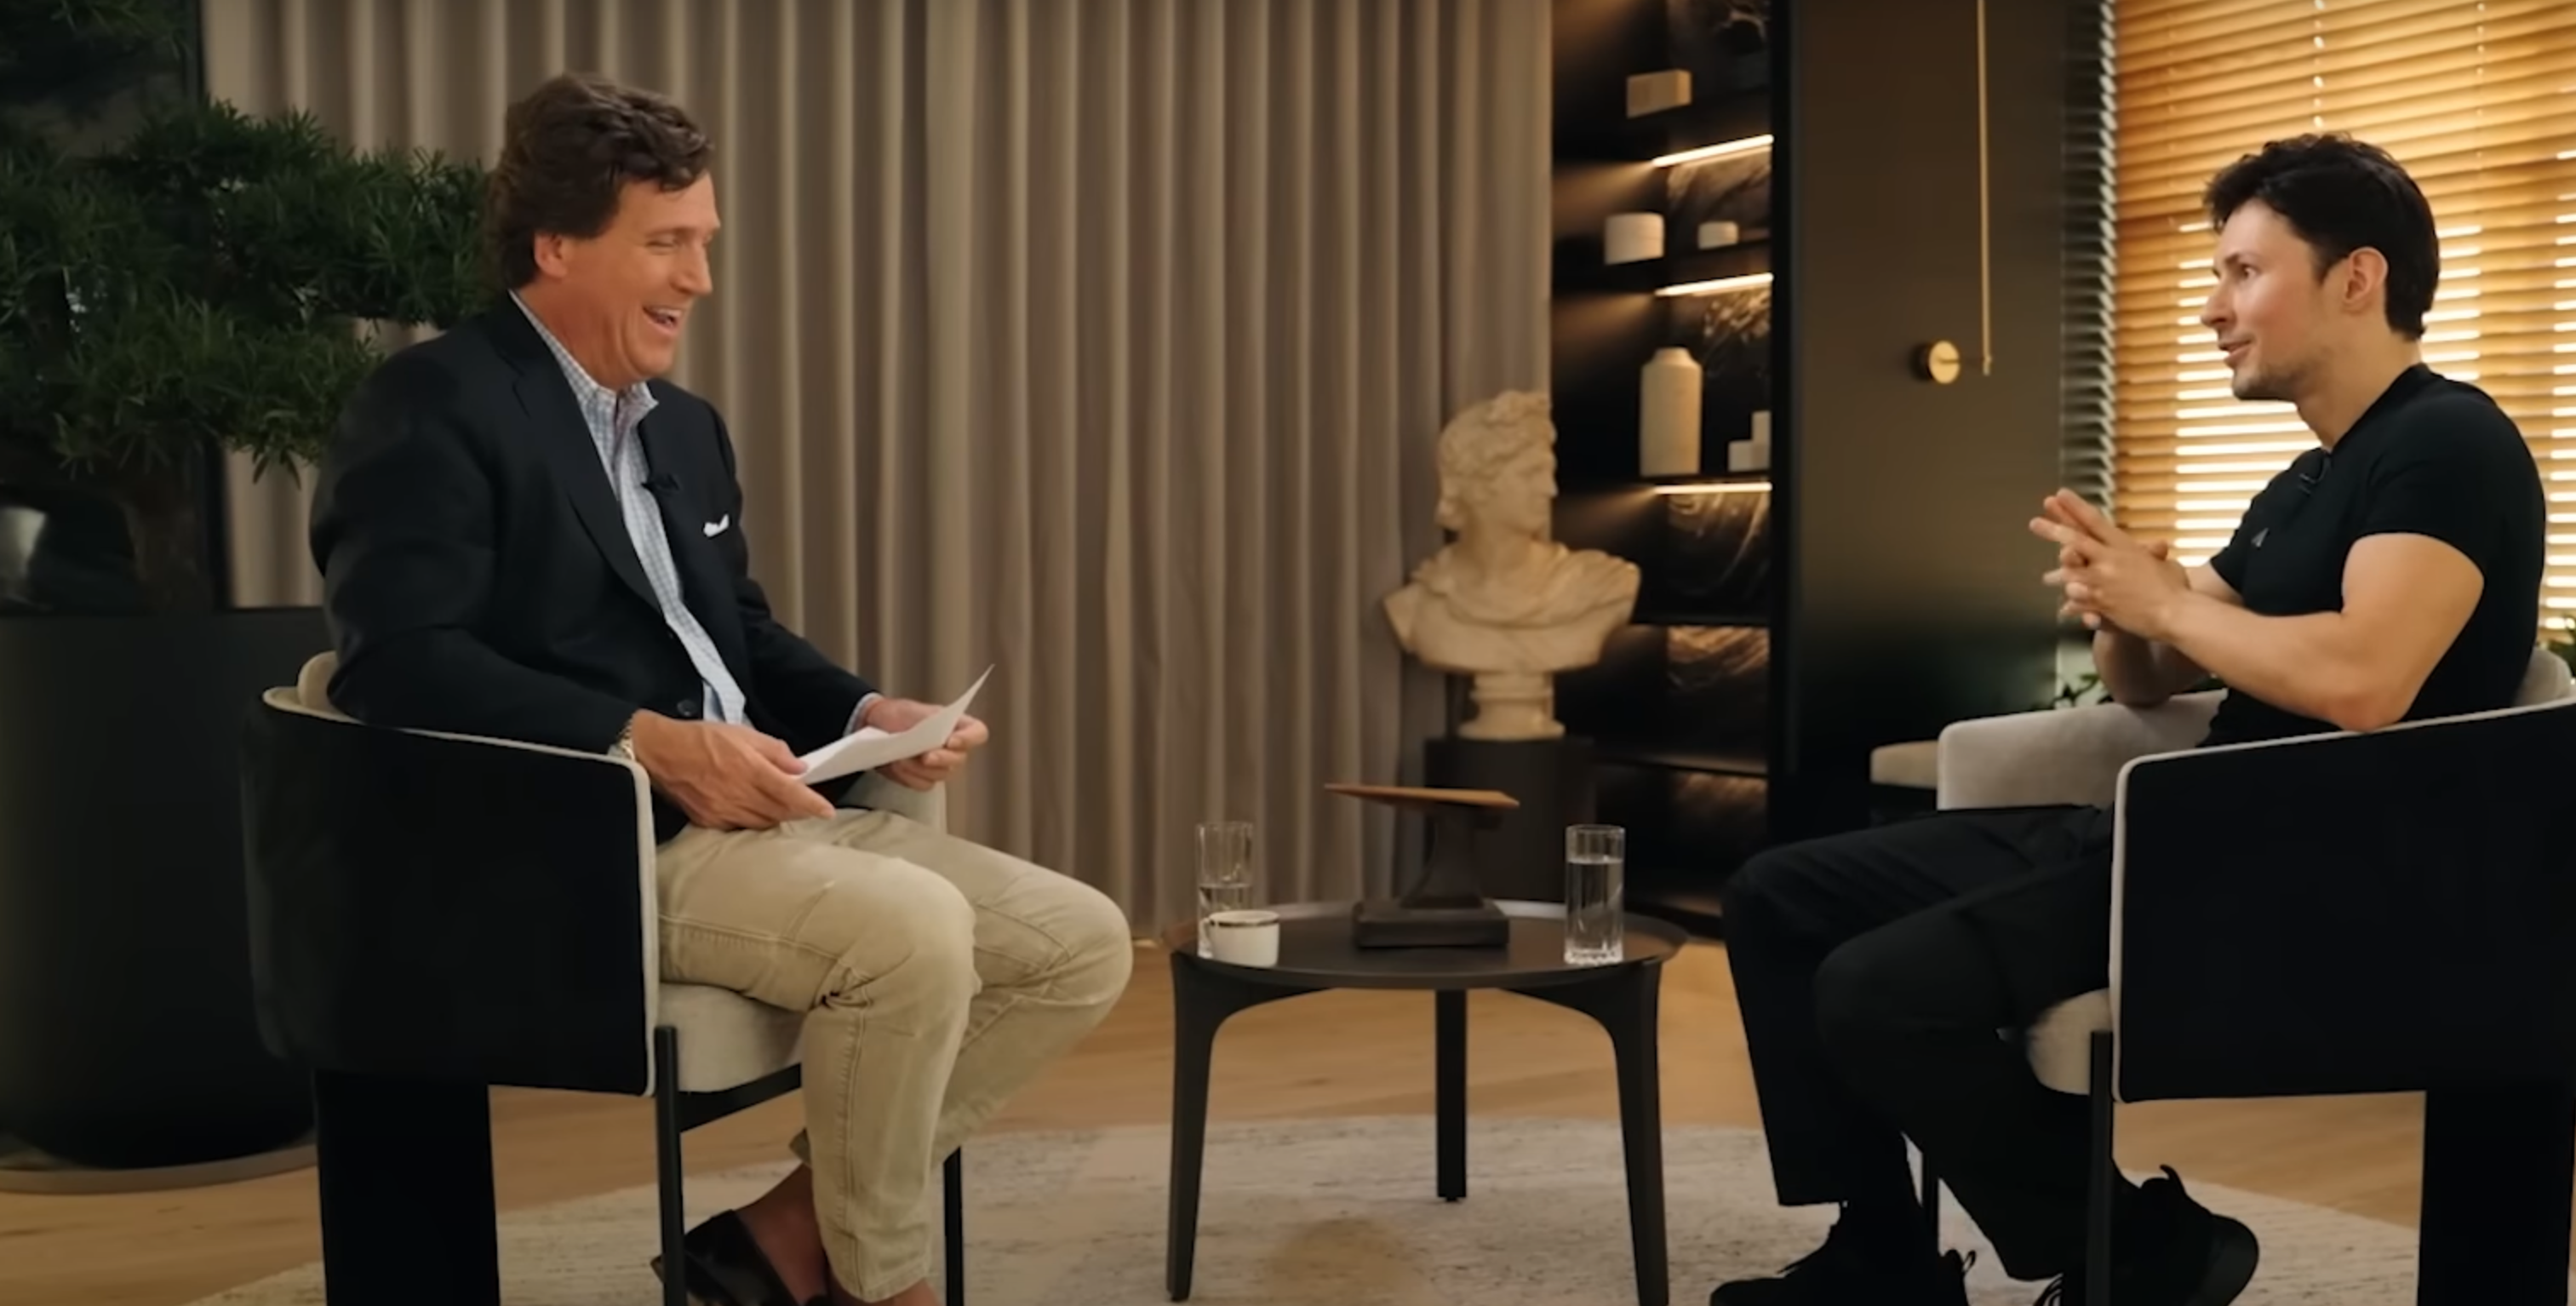 Screenshot Berlin 24/7 - Interview mit Journalist Tucker Carlson und Telegram-Inhaber Pavel Durow auf You Tube&nbsp;https://www.youtube.com/watch?v=1Ut6RouSs0w